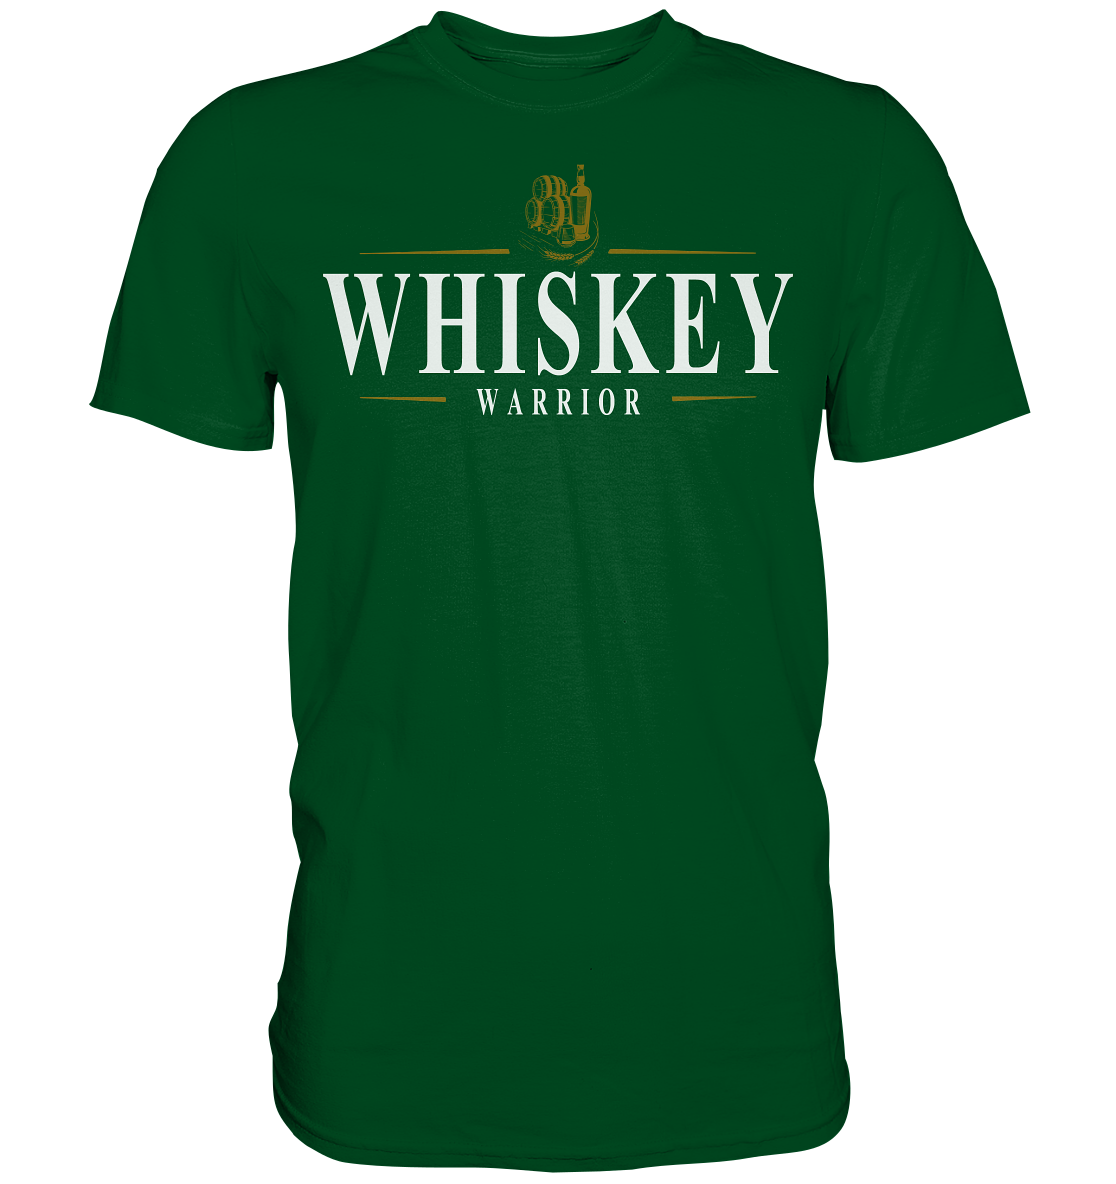 Whiskey "Warrior" - Premium Shirt